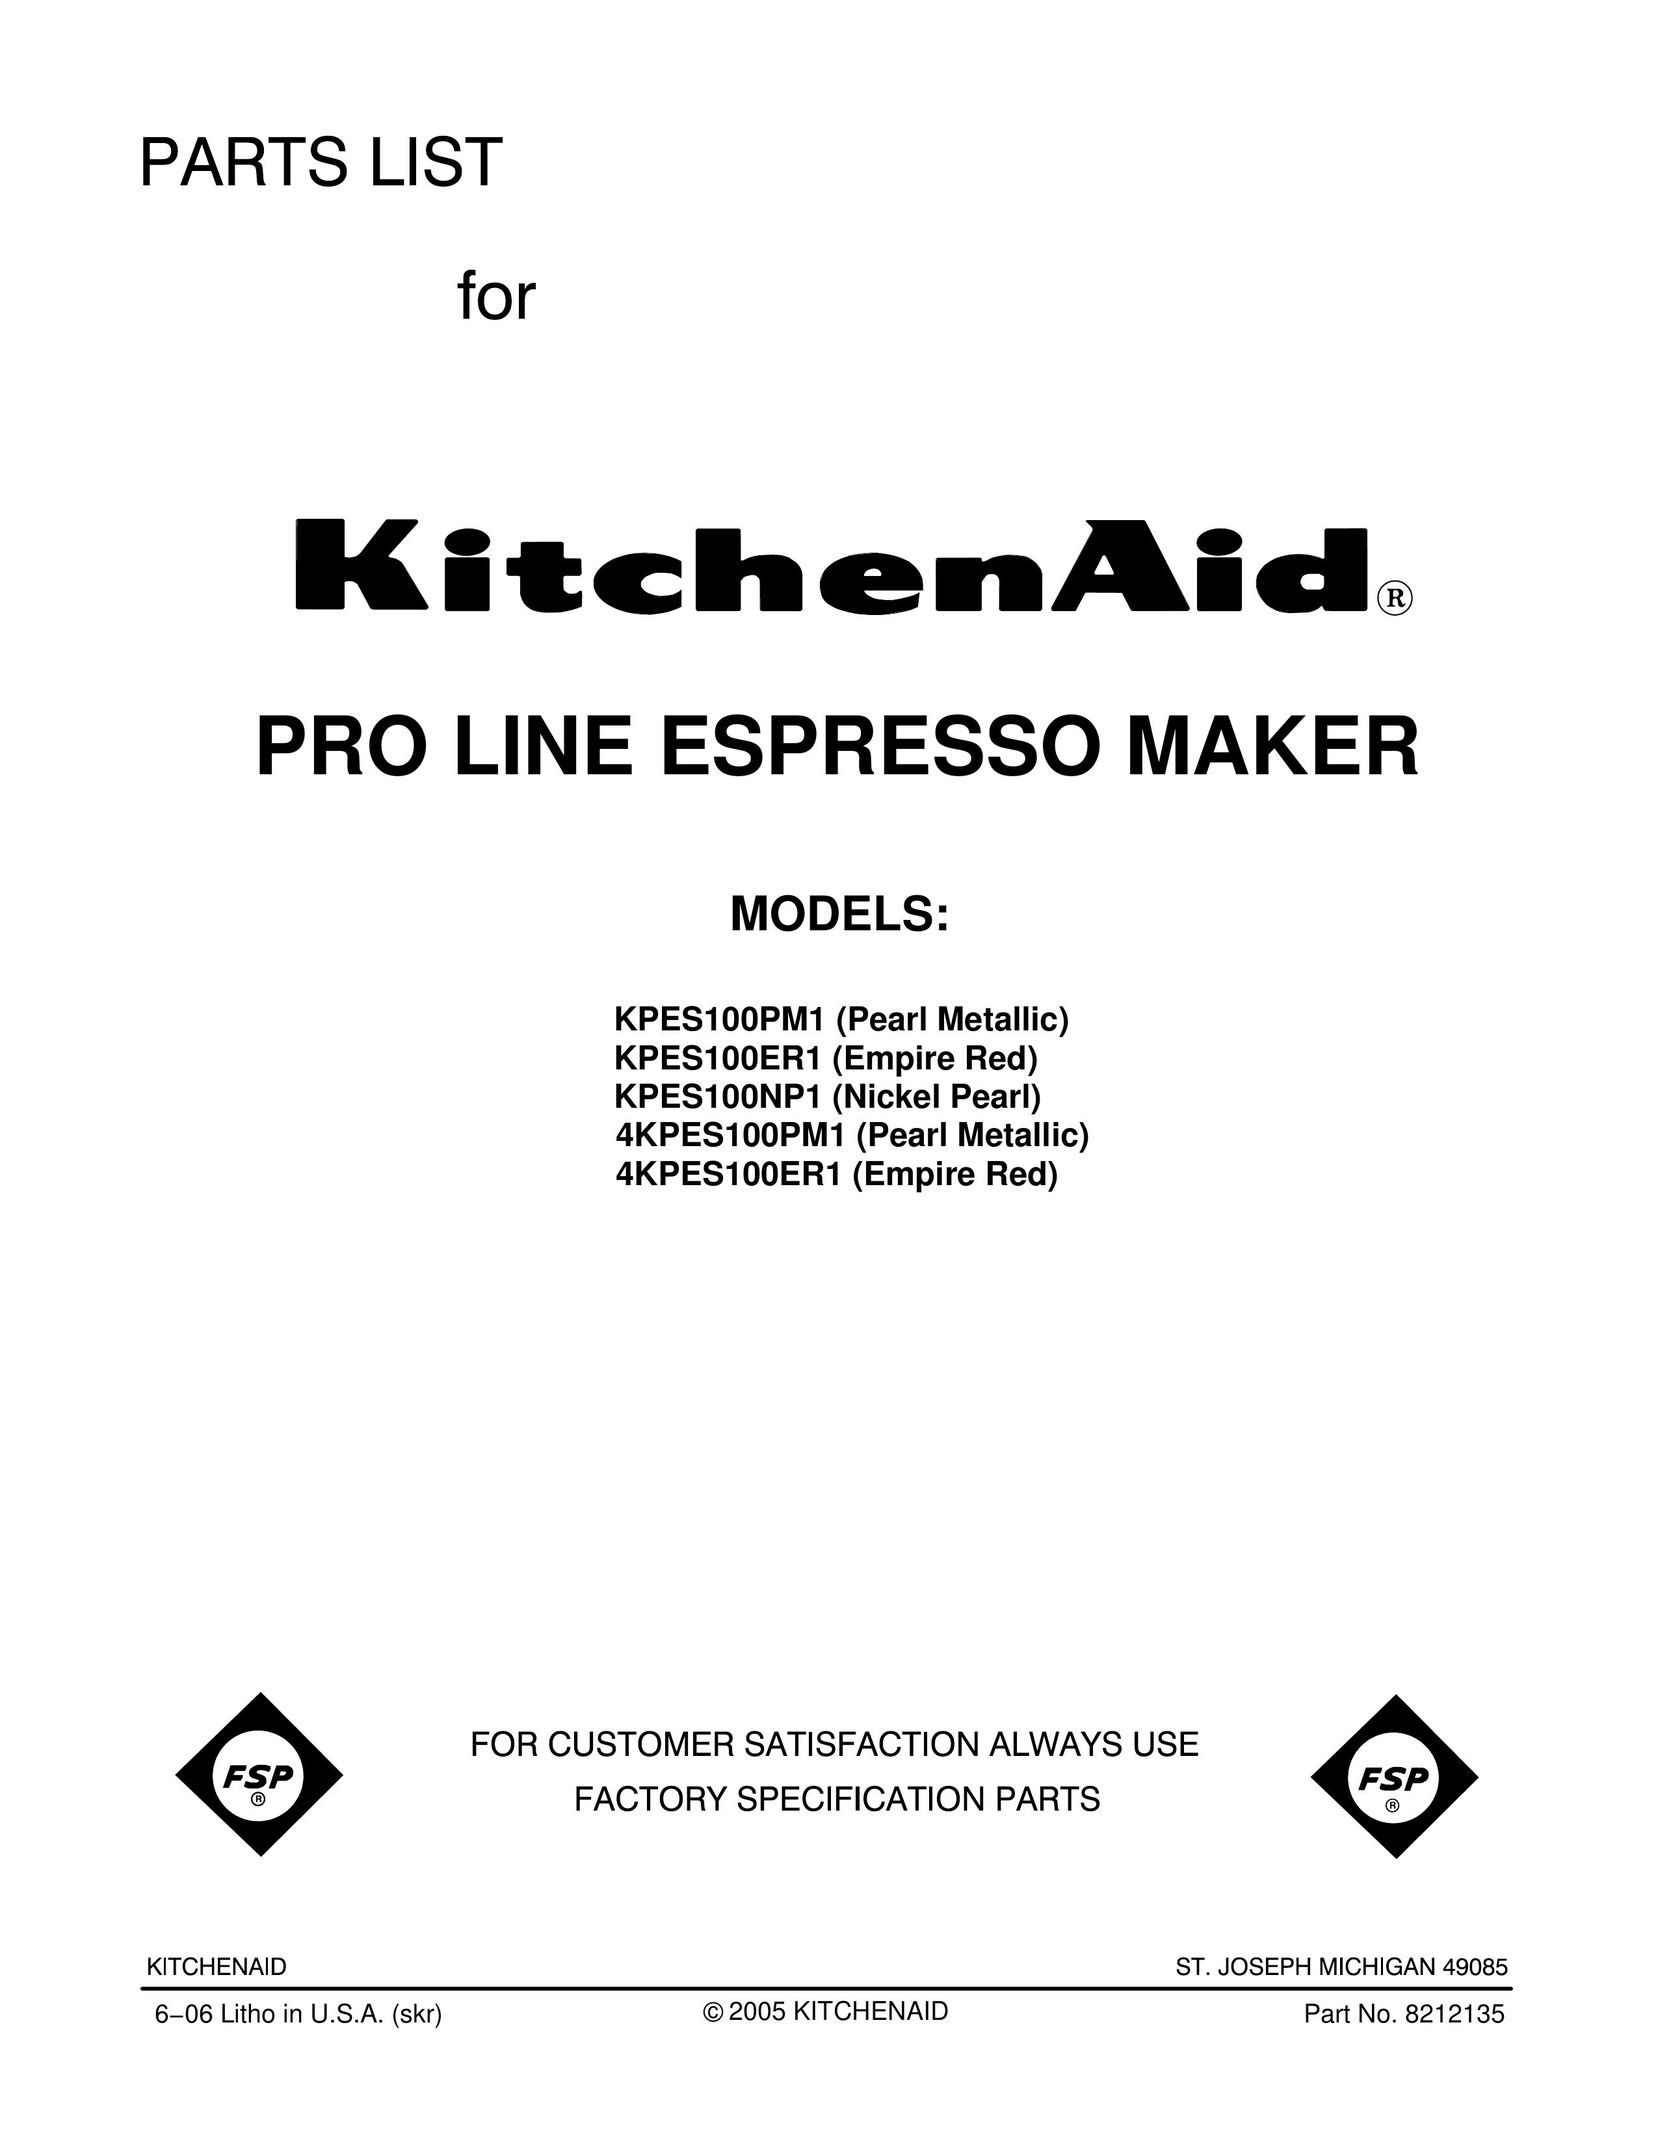 Maytag KPES100ER1 Espresso Maker User Manual